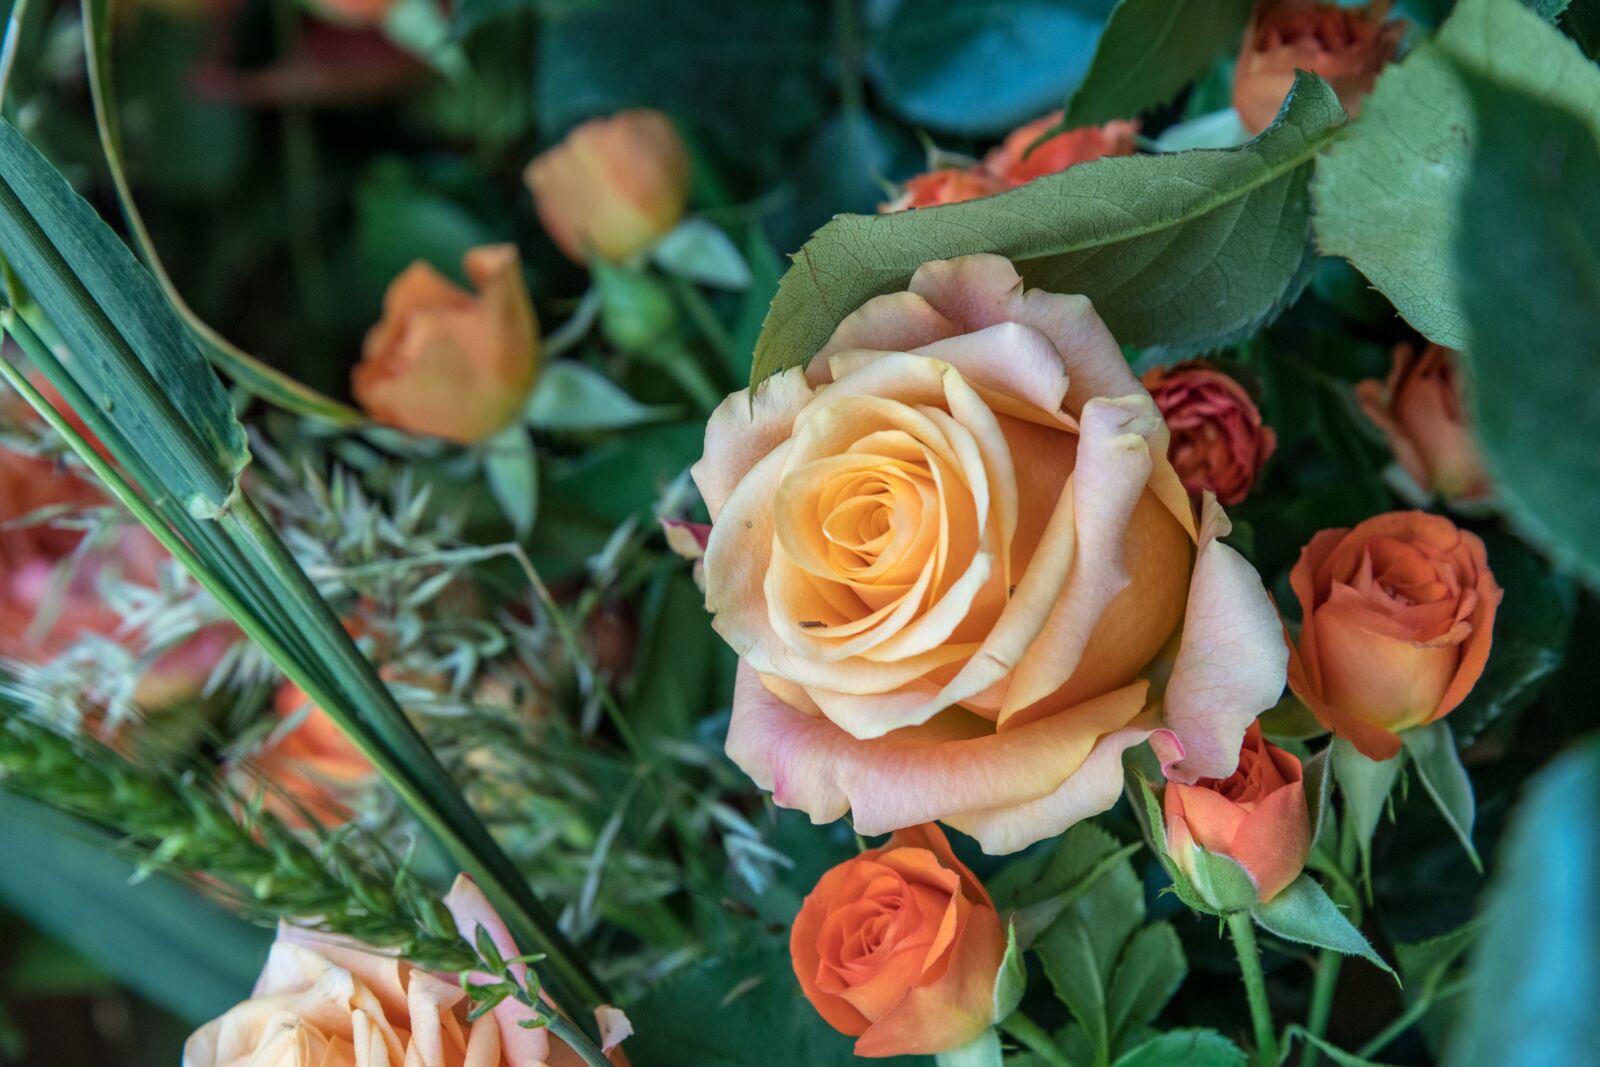 Nikon D850 sample photo. Rose, flower, bouquet photography